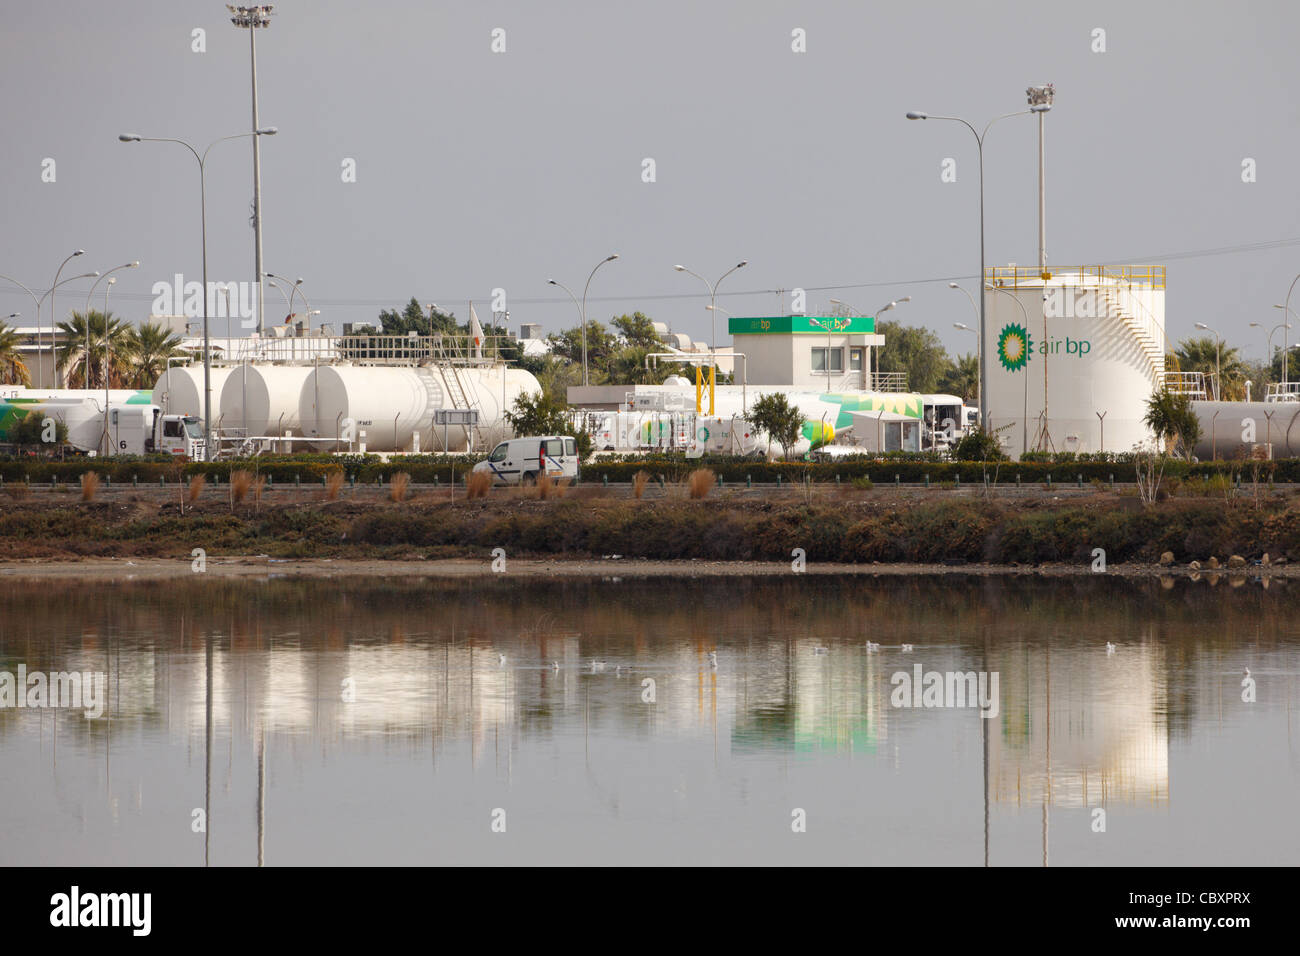 Installations pétrolières britanniques à l'aéroport de Larnaca, Chypre Banque D'Images